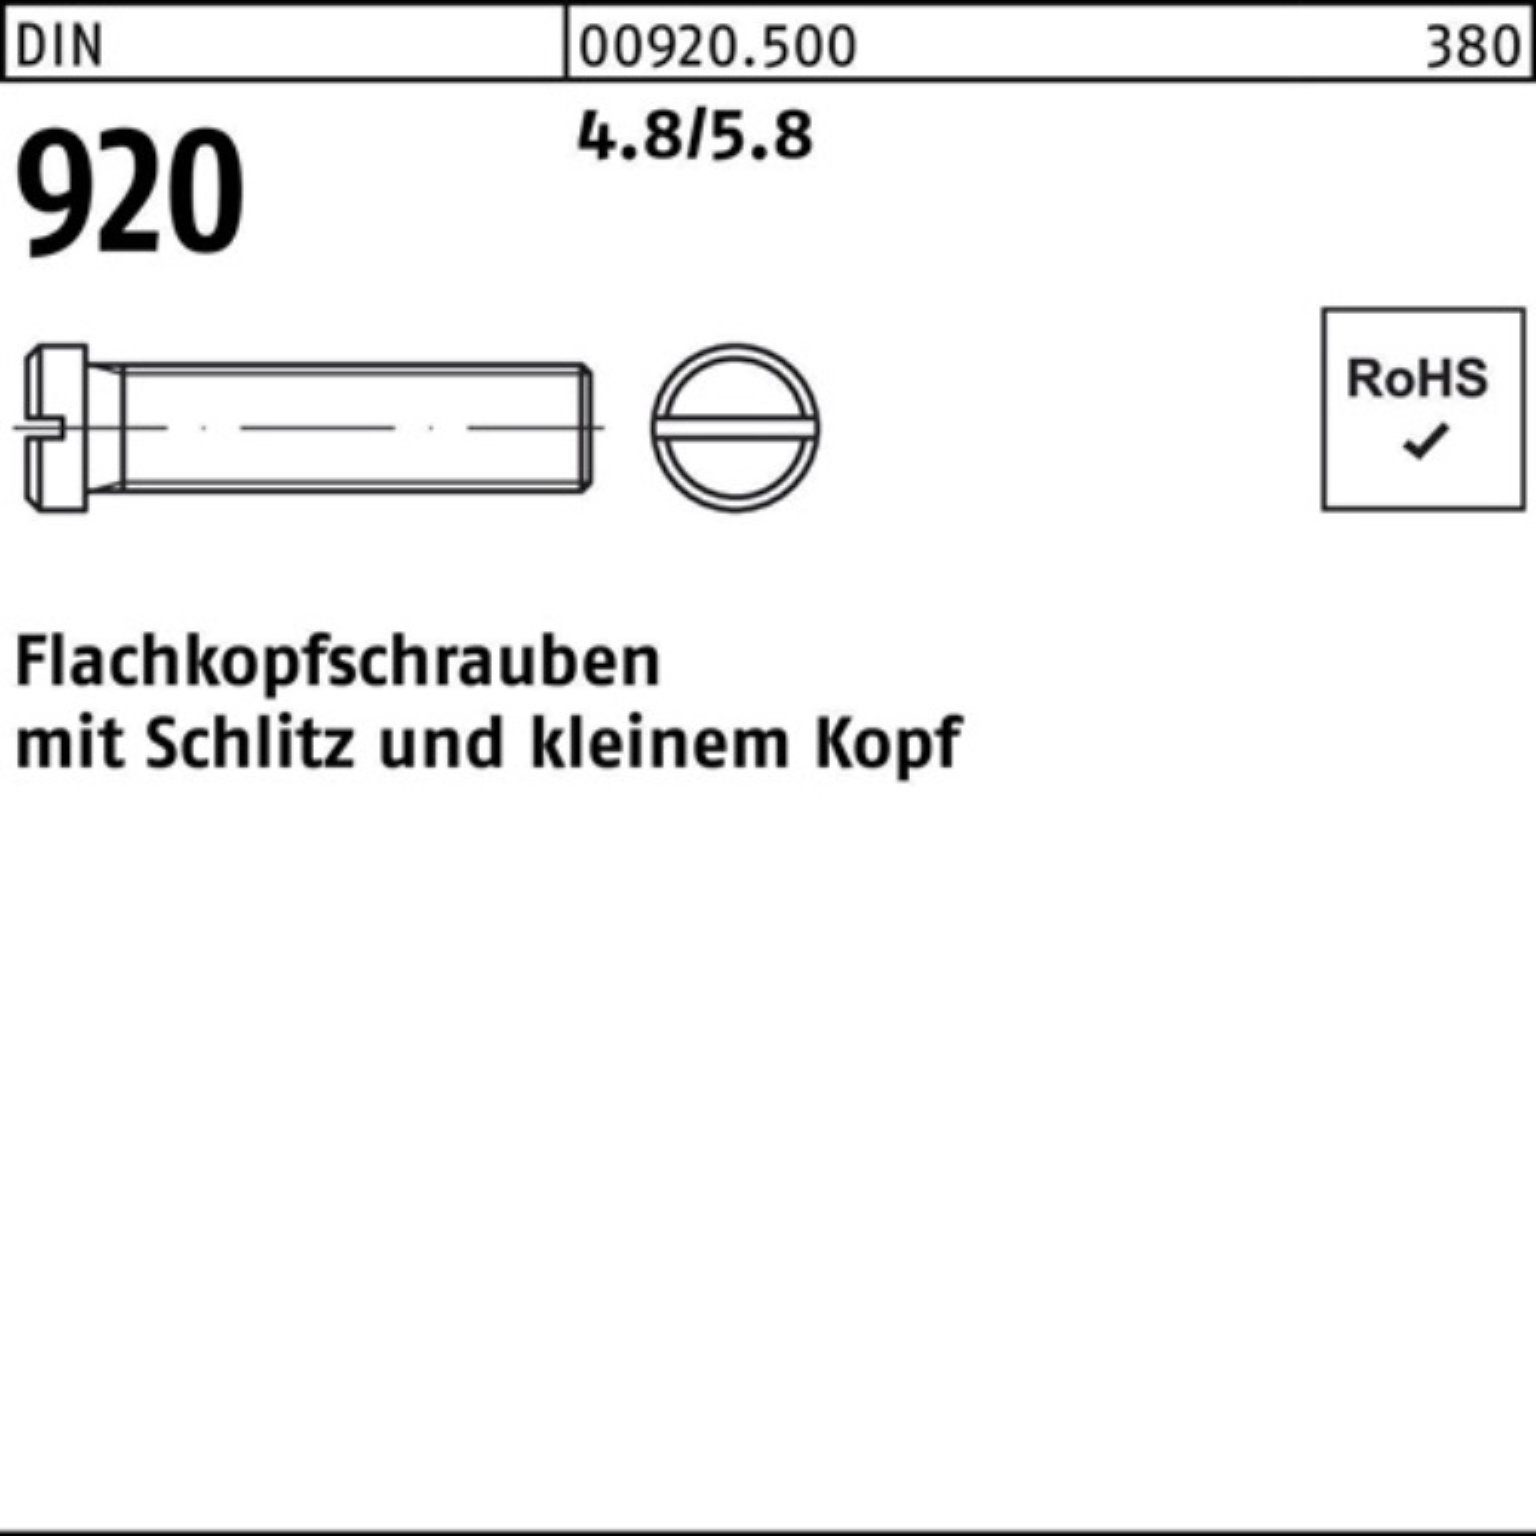 Reyher Schraube 100er Pack Flachkopfschraube DIN 920 Schlitz M3x 16 4.8/5.8 100 Stück